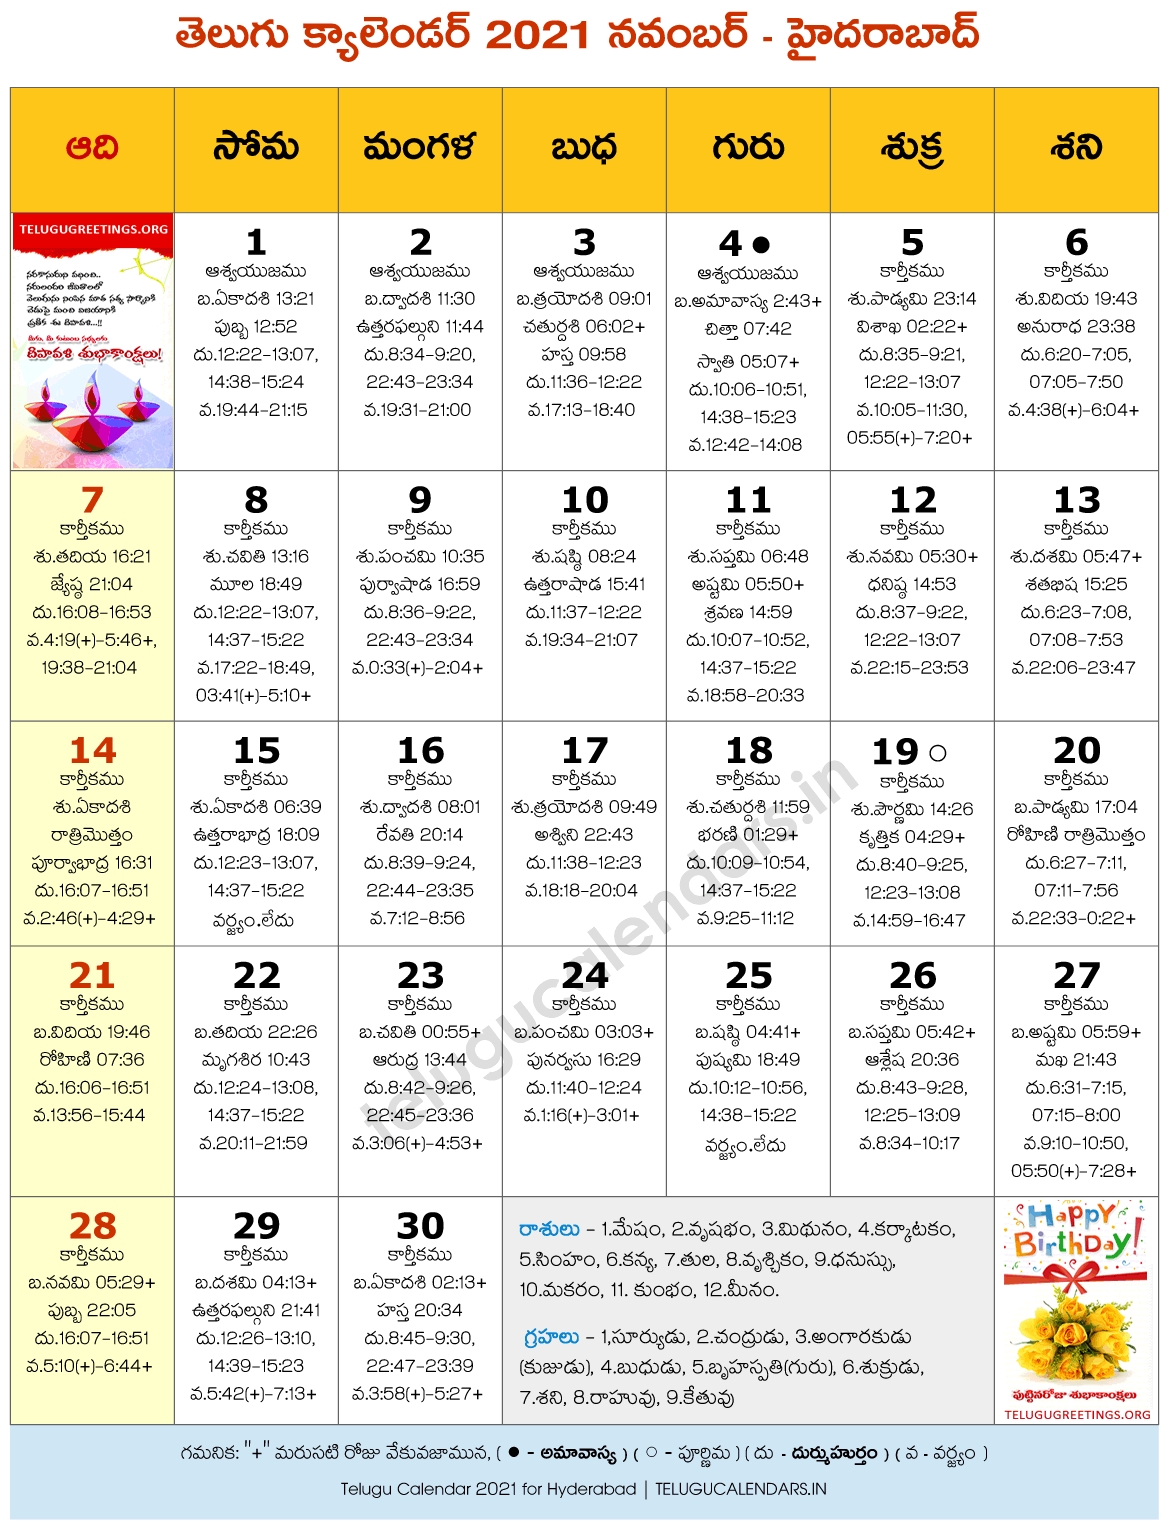 Hyderabad 2021 November Telugu Calendar | Telugu Calendars August 2021 Calendar Telugu